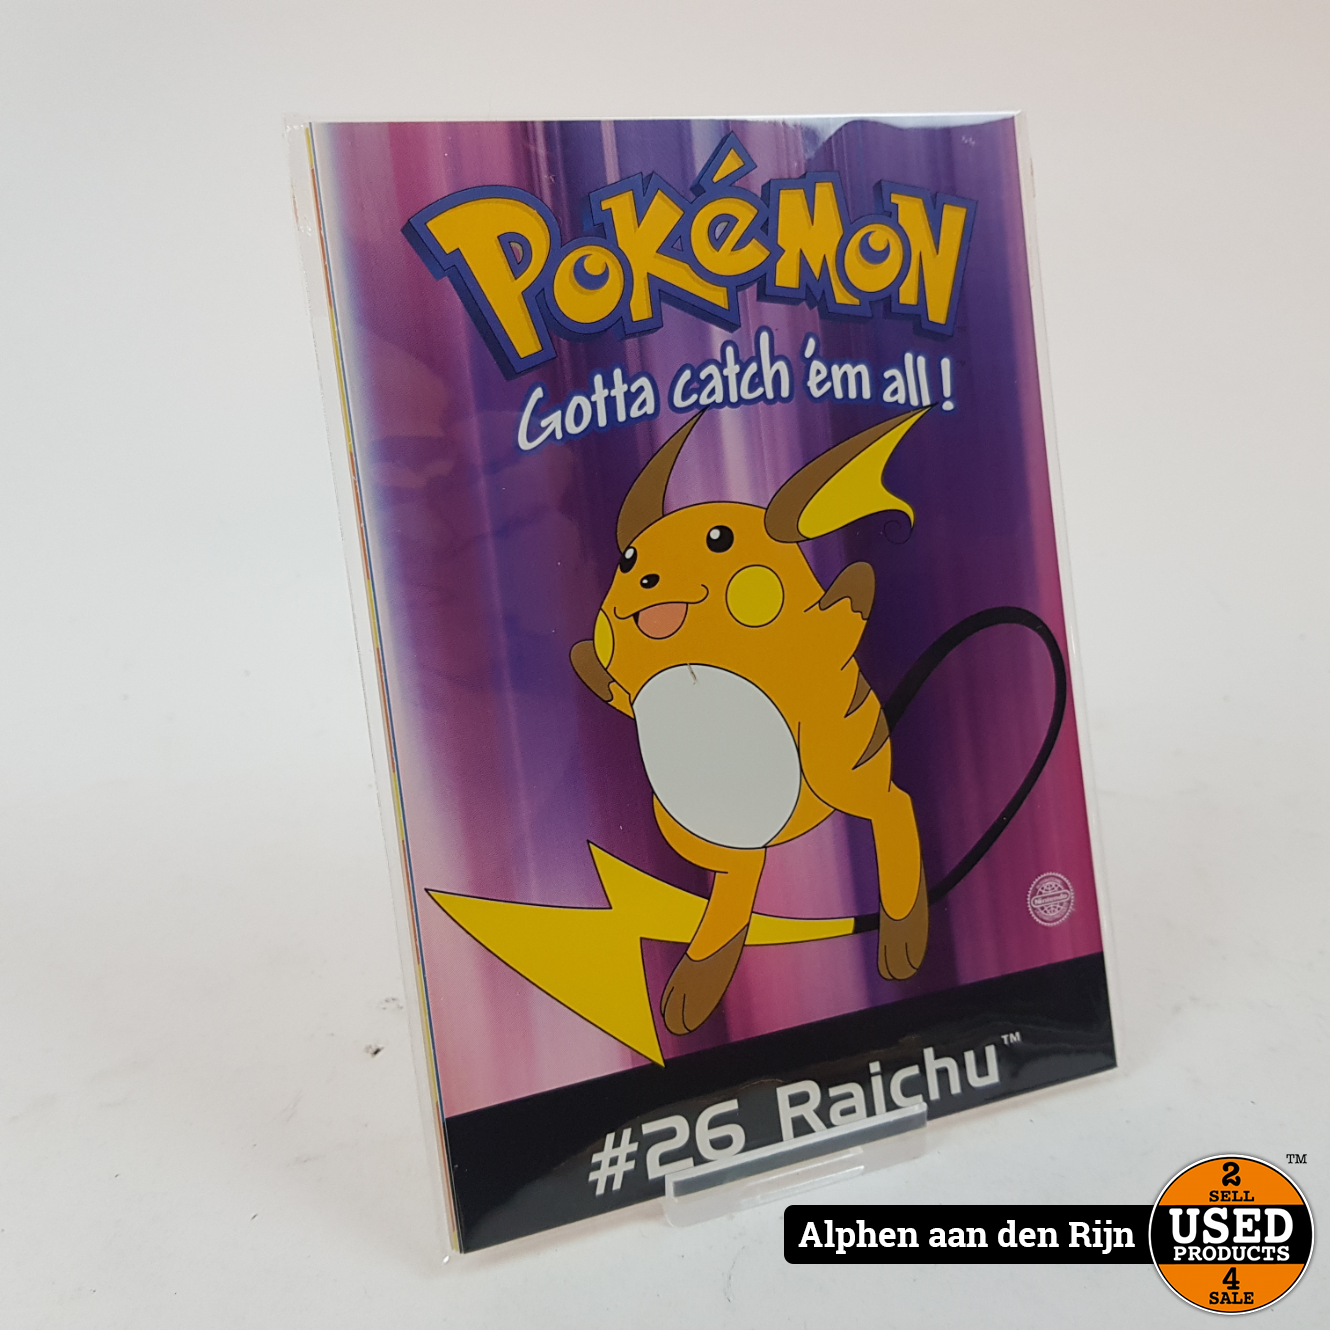 lid Wieg doe niet Pokemon kaarten - wenskaarten Origineel Nintendo 1998 - Raichu - Used  Products Alphen aan den Rijn